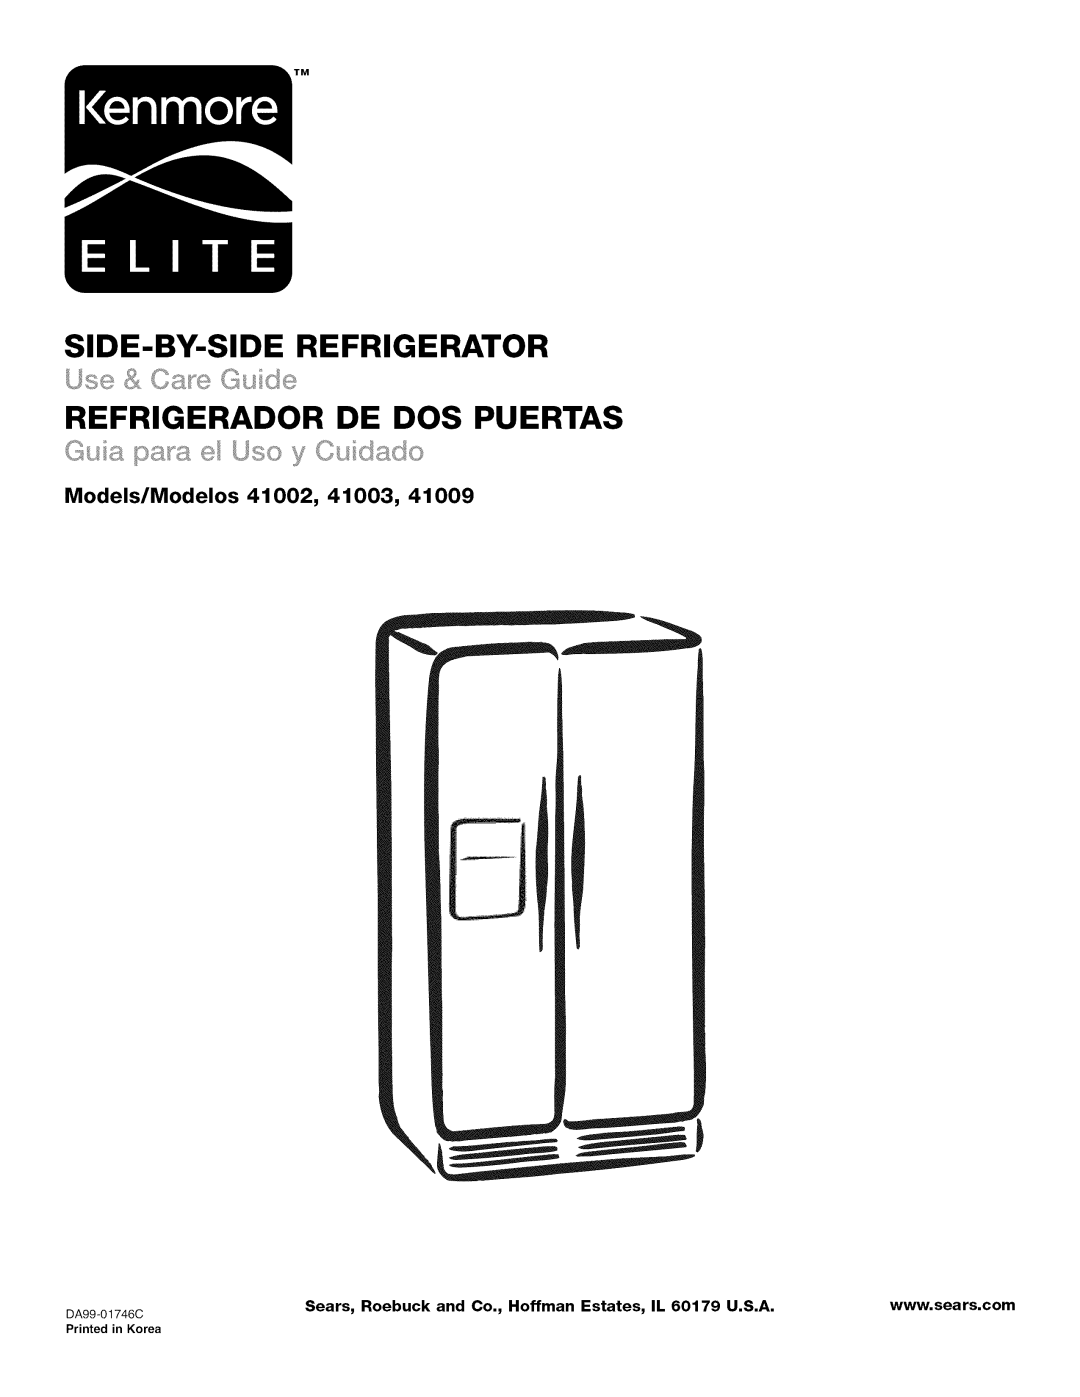 Kenmore 41003, 41009 manual Models/Modelos 41002, Side-By-Siderefrigerator, Refrigerador De Dos Puertas, DA99-01746C 